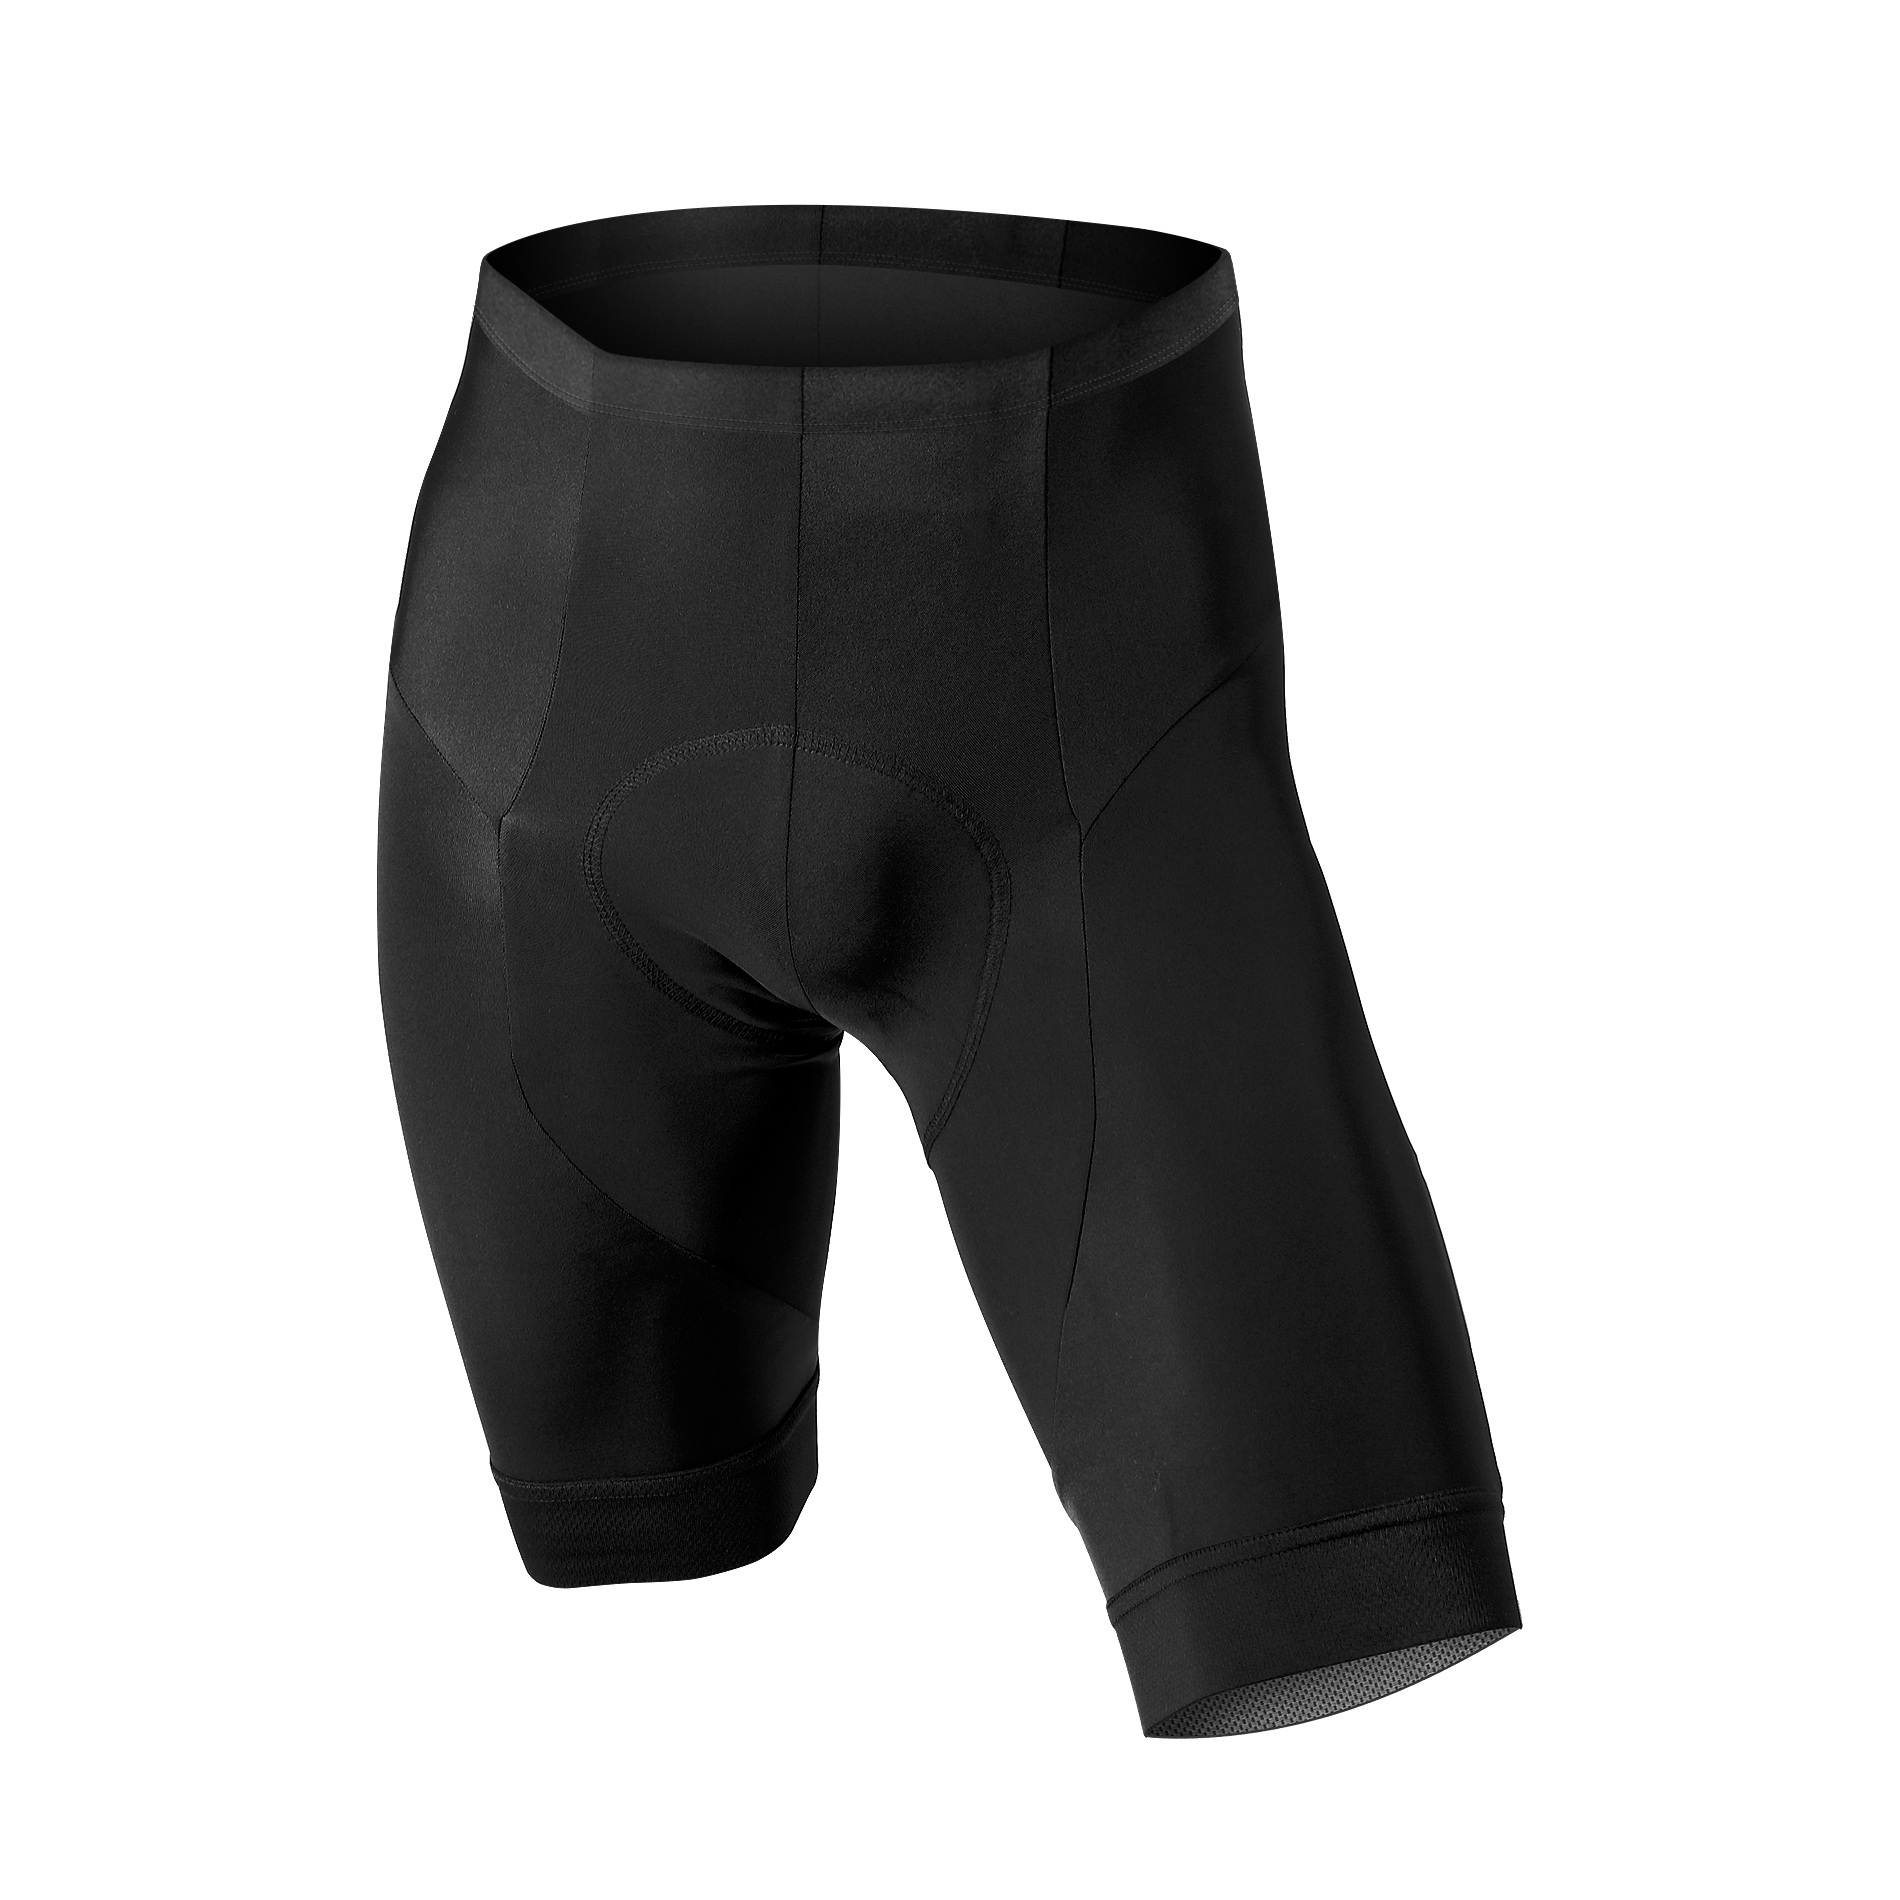 Granfondo shorts - Men - Ftech World